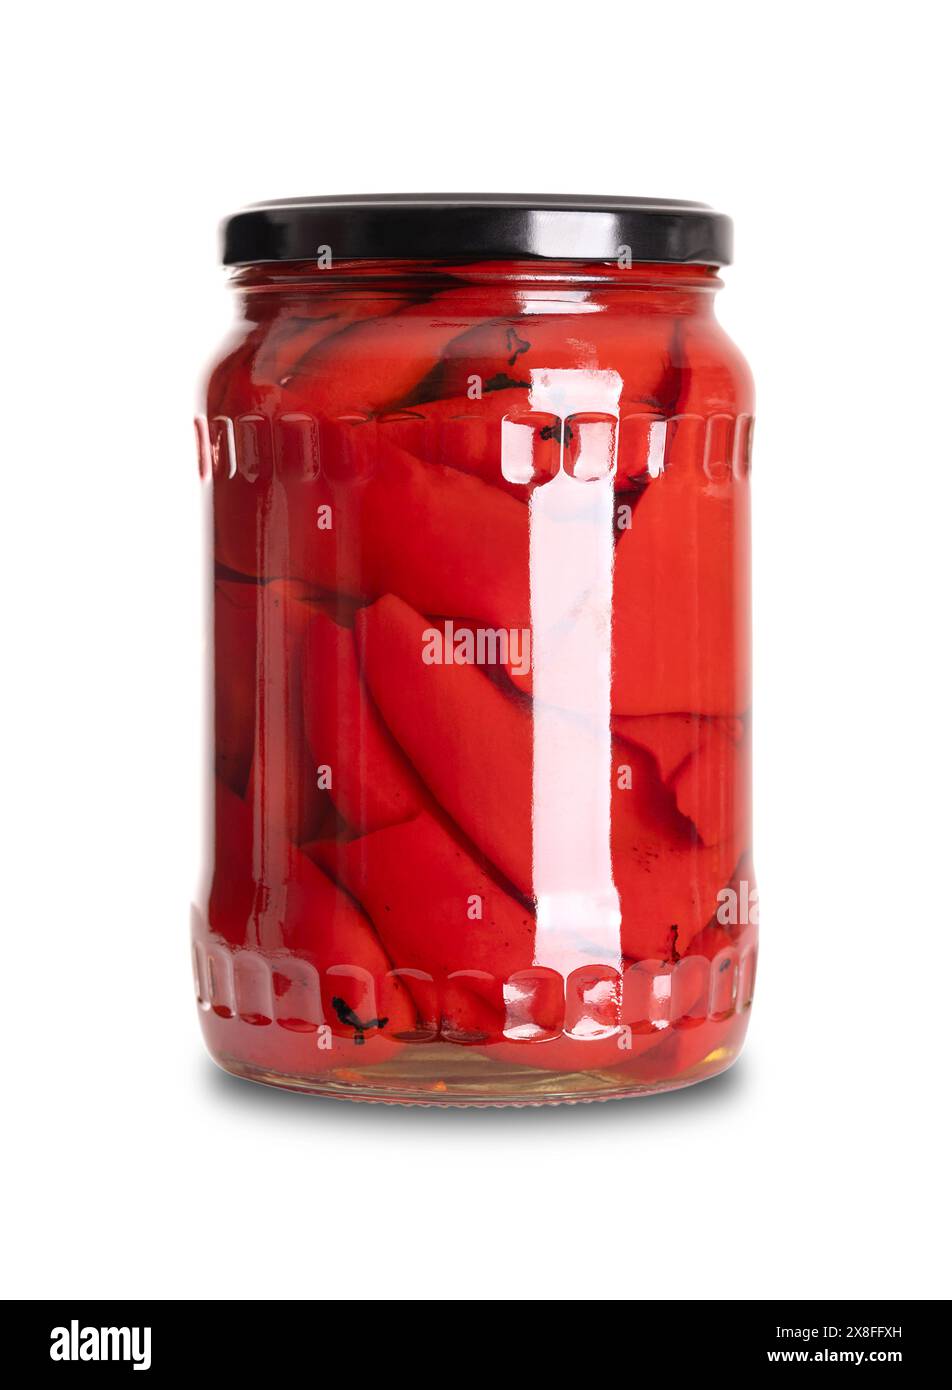 Gegrillte rote Paprika-Hälften, eingelegt in einem Glasbecher mit Schraubverschluss. Halbierte süße Paprika, geröstet und in Essigsalze, Salz und Gewürzen eingelegt. Stockfoto